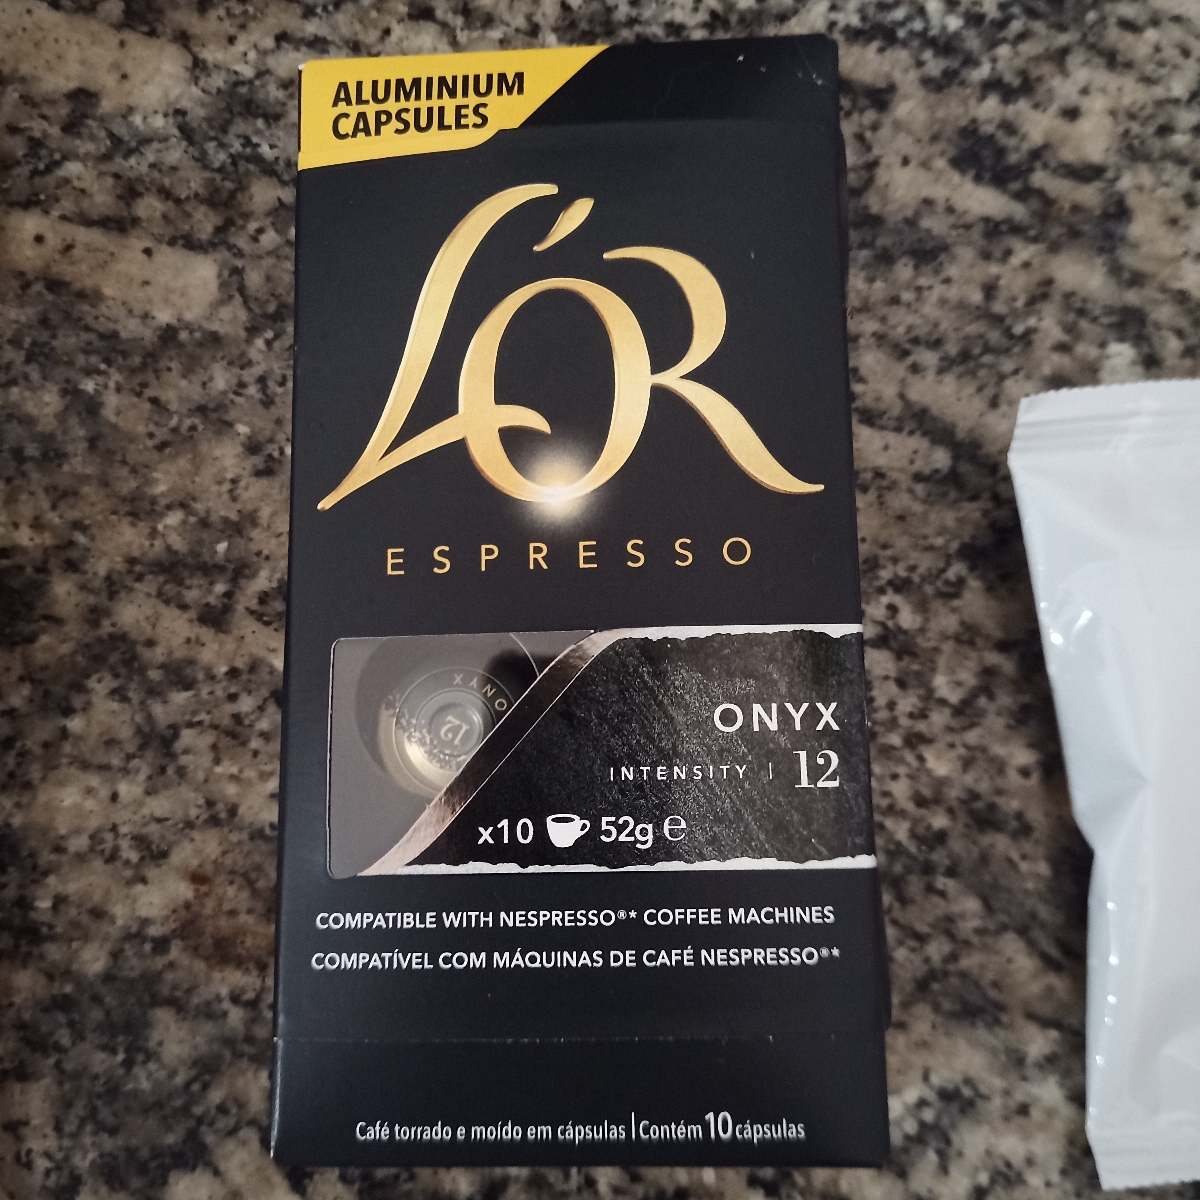 Capsule Café Onyx 12, L'OR Espresso